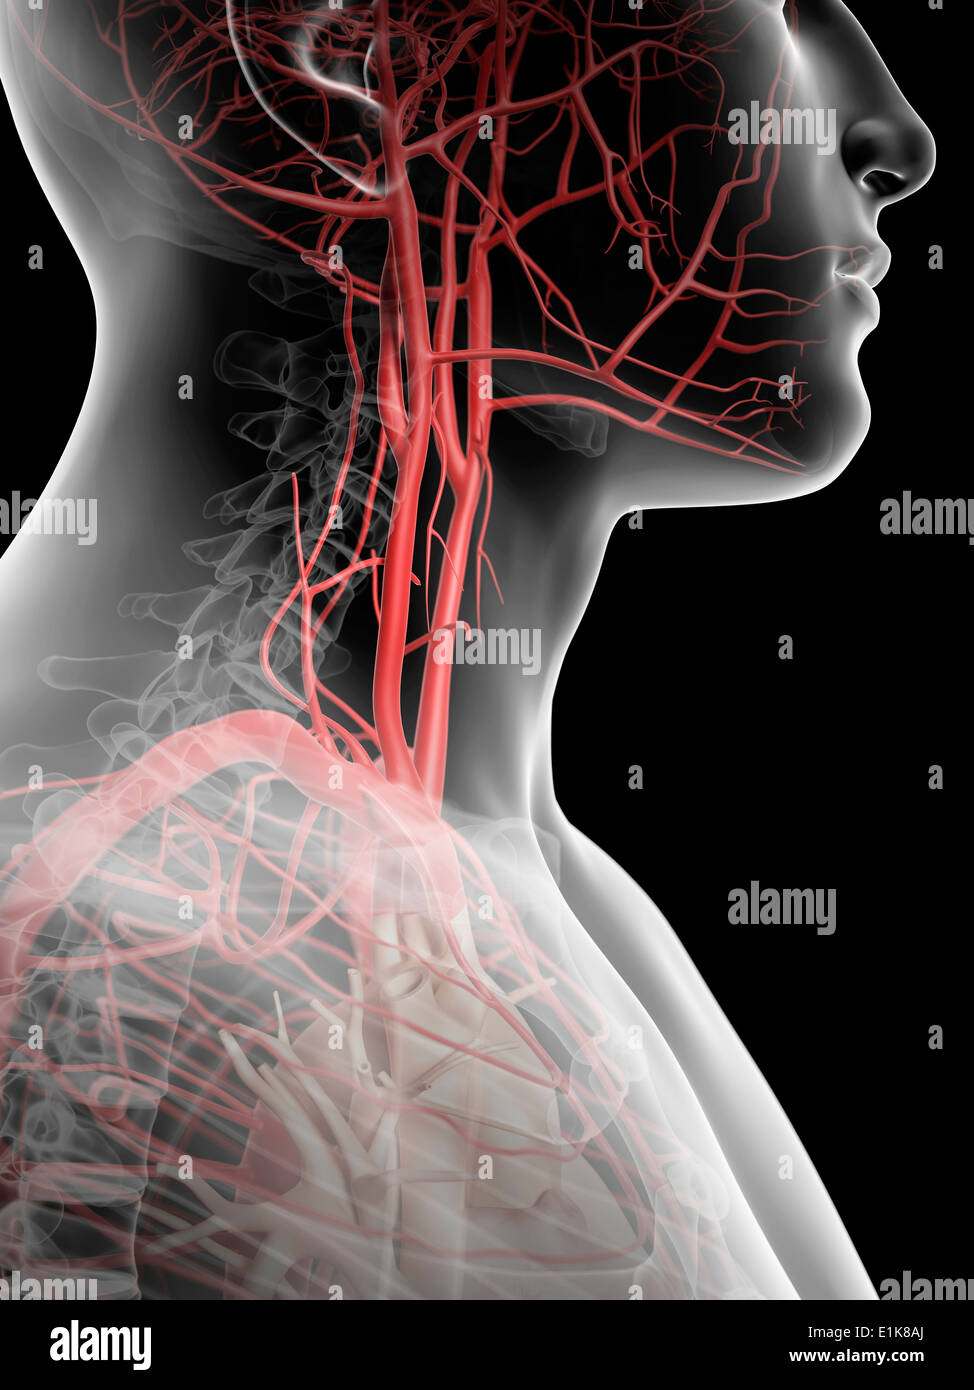 Menschliche Stimme Arterien Computer Artwork. Stockfoto